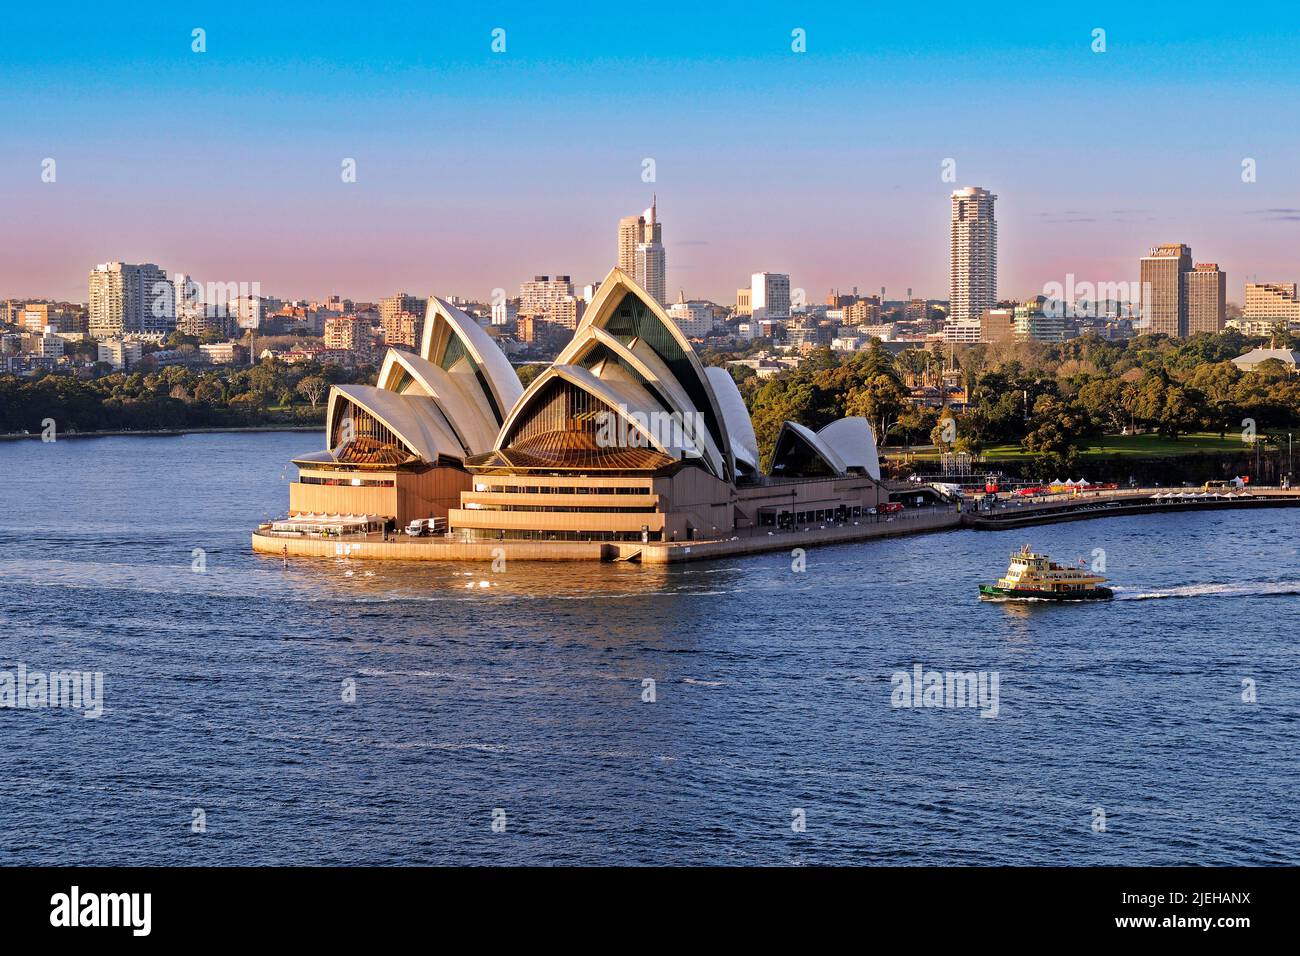 Oper von Sydney von der Harbour Bridge aus gesehen, am frühen Morgen, Sydney, Nueva Gales del Sur, Australien Foto de stock